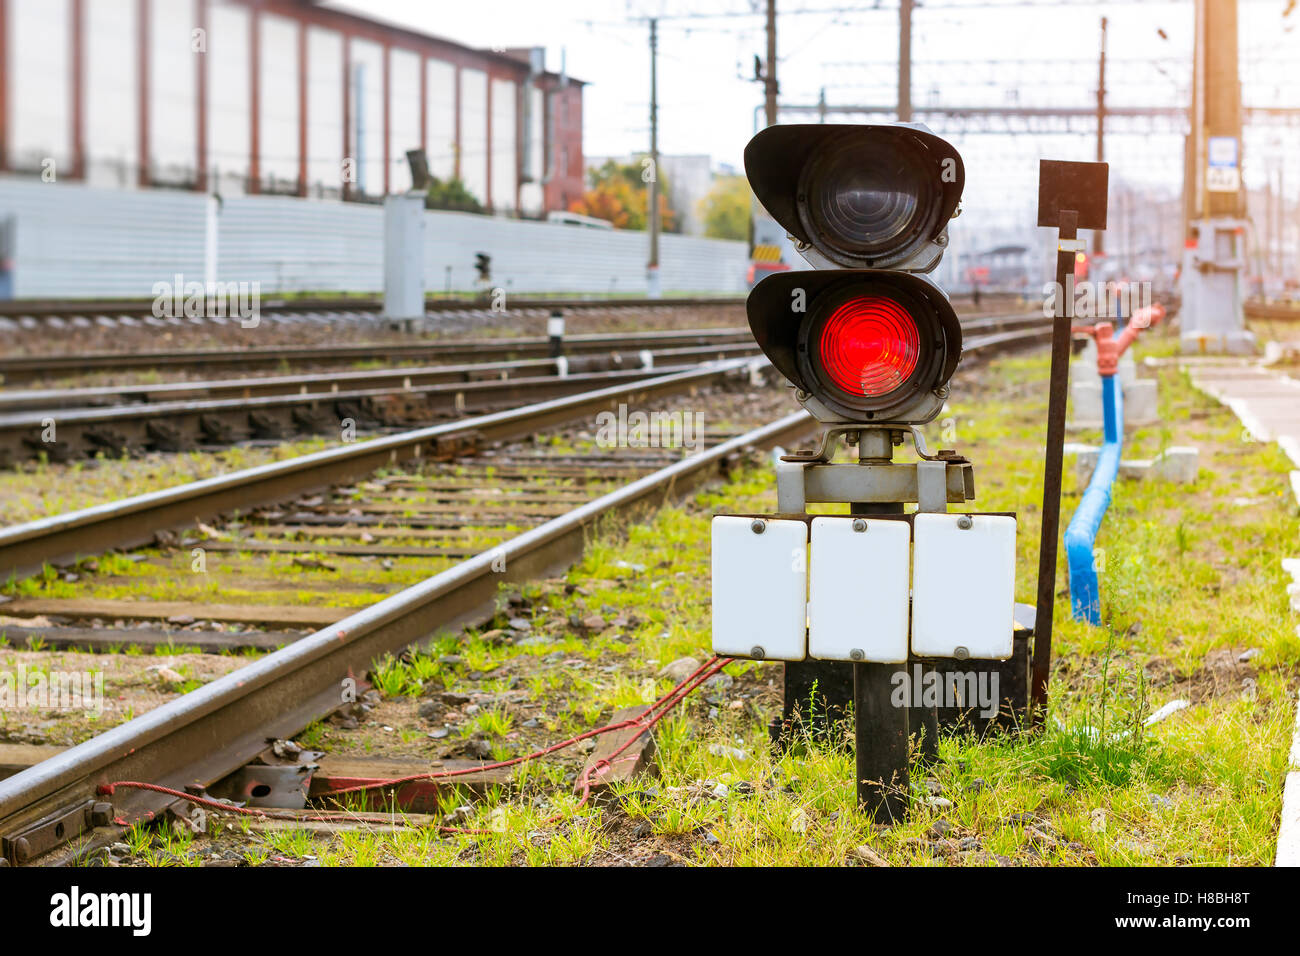 Sémaphore de fer interdisant s'allume en rouge. La technique de dépôt. Infrastructures de transport des chemins de fer russes, Saint-Pétersbourg Banque D'Images